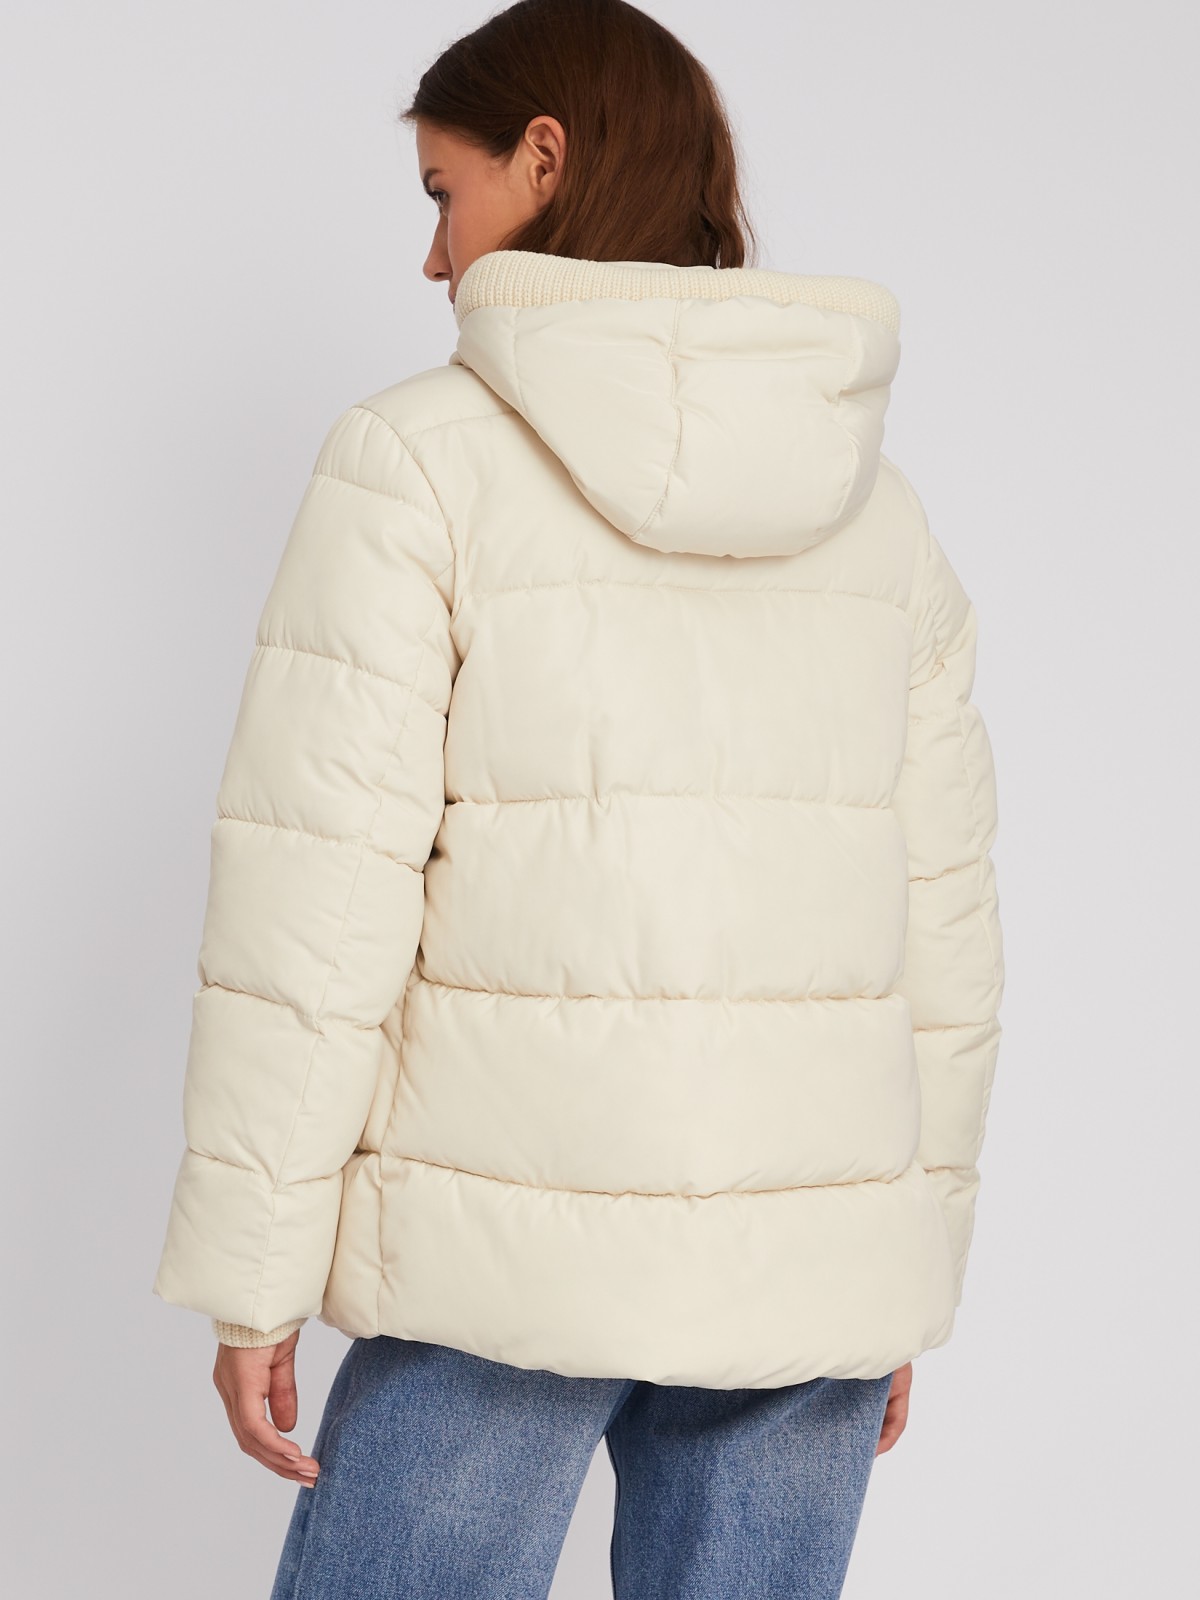 Тёплая стёганая куртка с капюшоном и внутренними манжетами-риб zolla 023345102064, цвет молоко, размер XS - фото 6